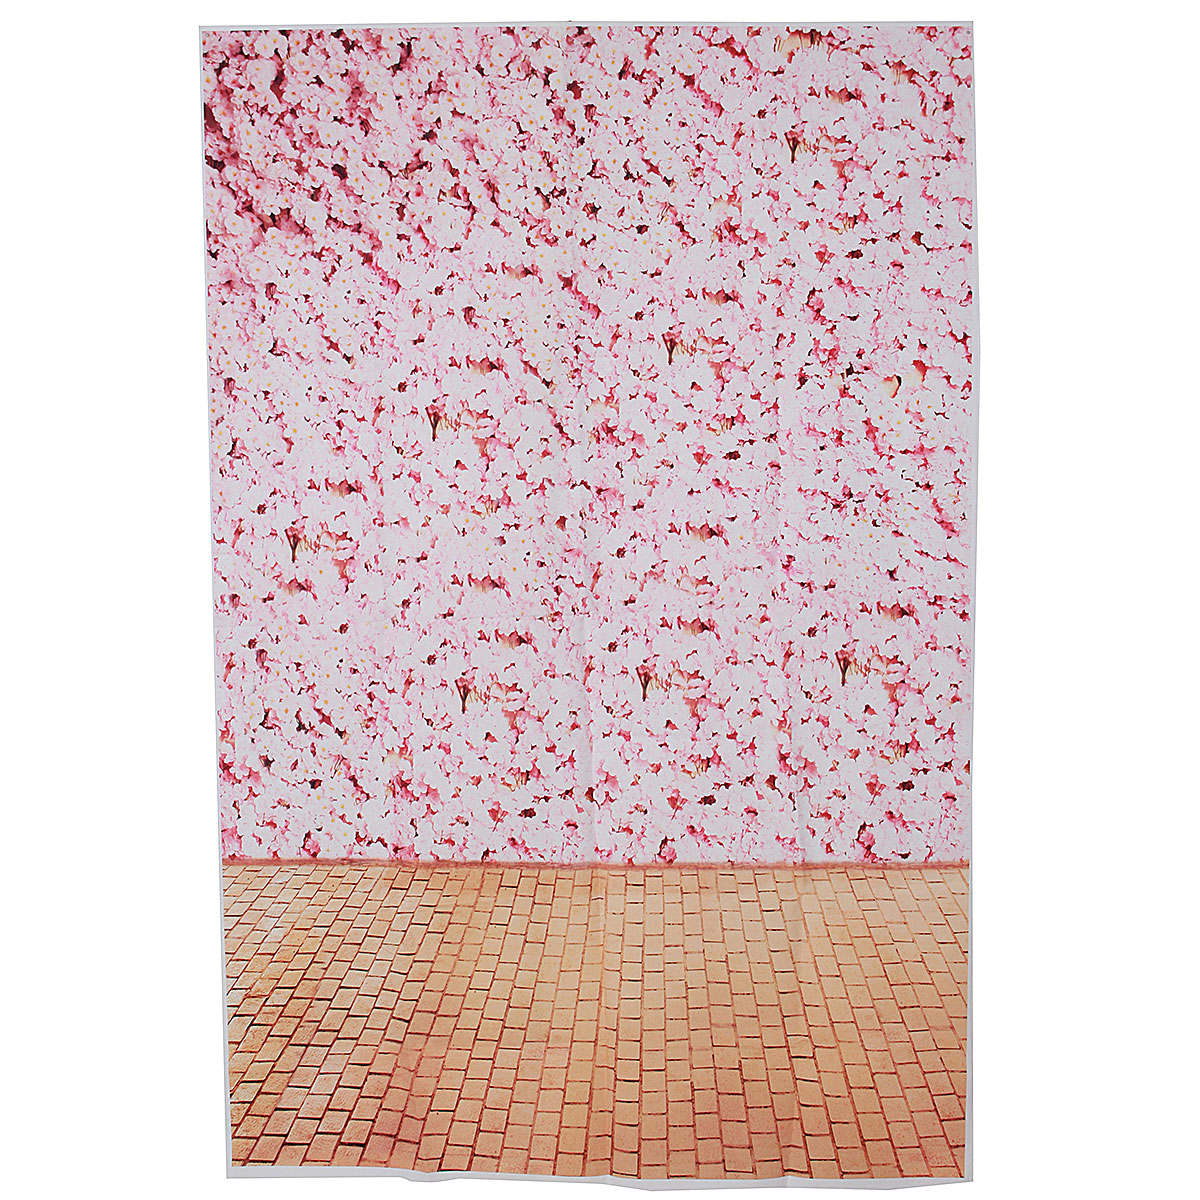 

3x5FT винил Розовый цветок стены деревянный пол фотография фон фон студия опора